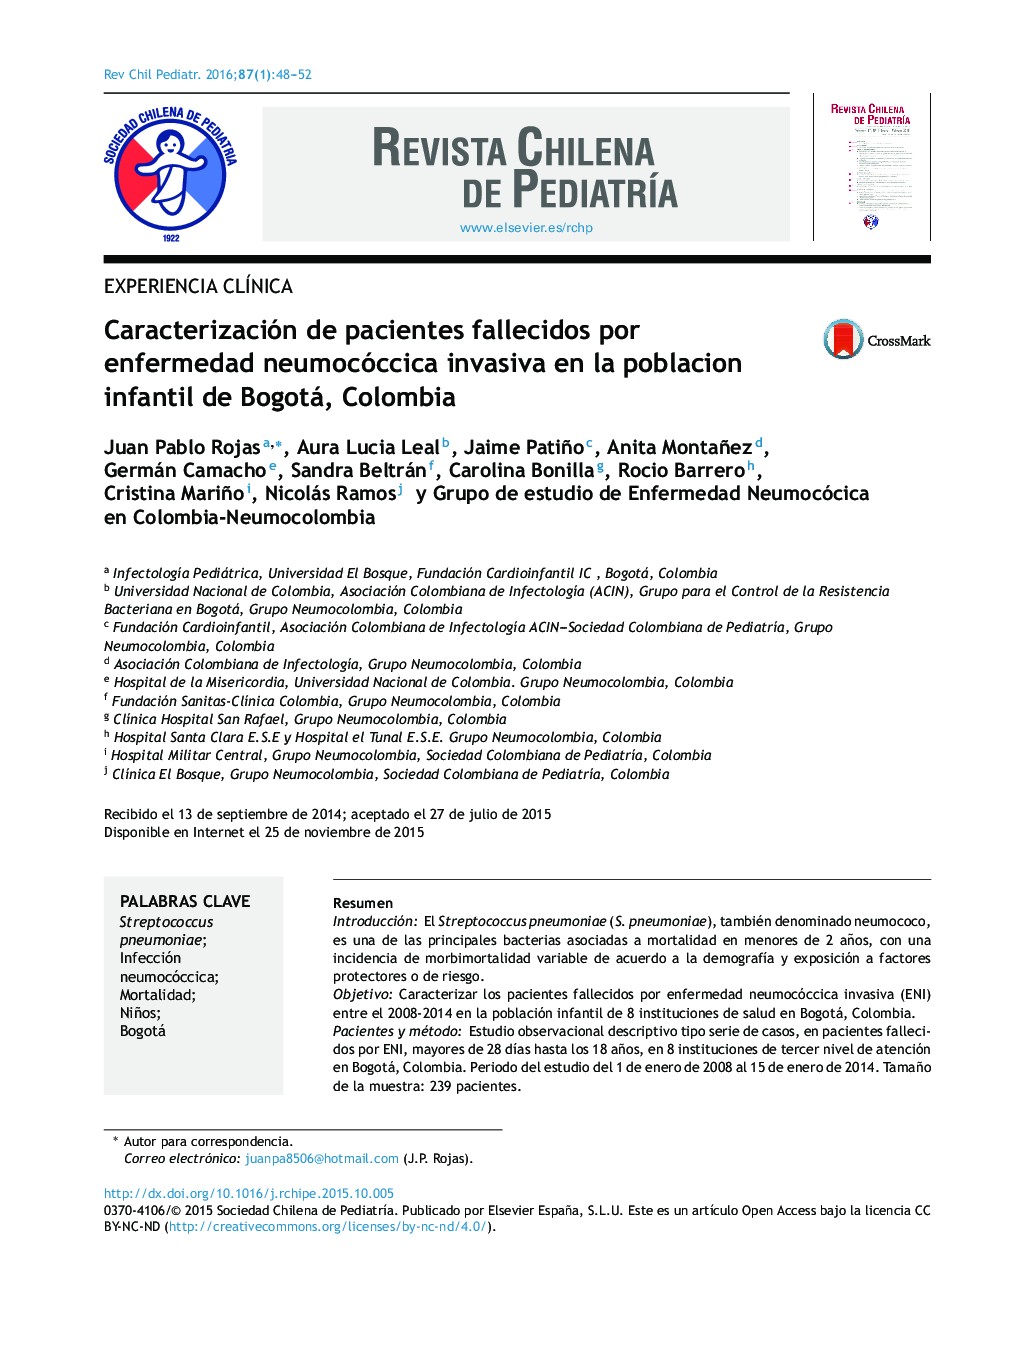 Caracterización de pacientes fallecidos por enfermedad neumocóccica invasiva en la poblacion infantil de Bogotá, Colombia